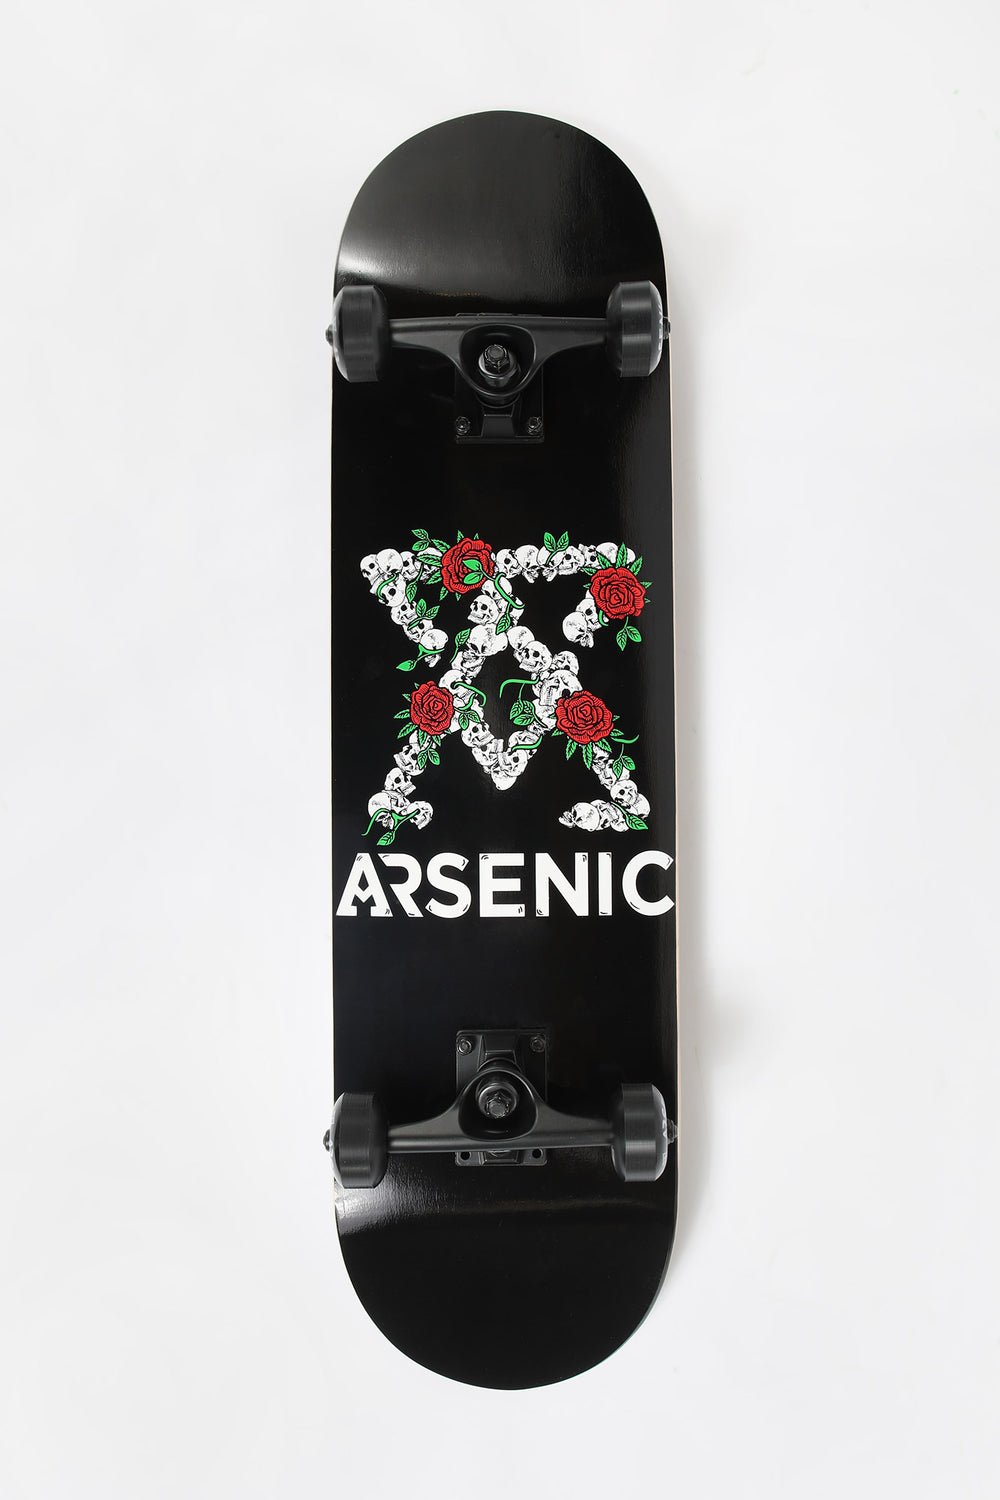 Skateboard Imprimé Crânes & Roses Arsenic 8